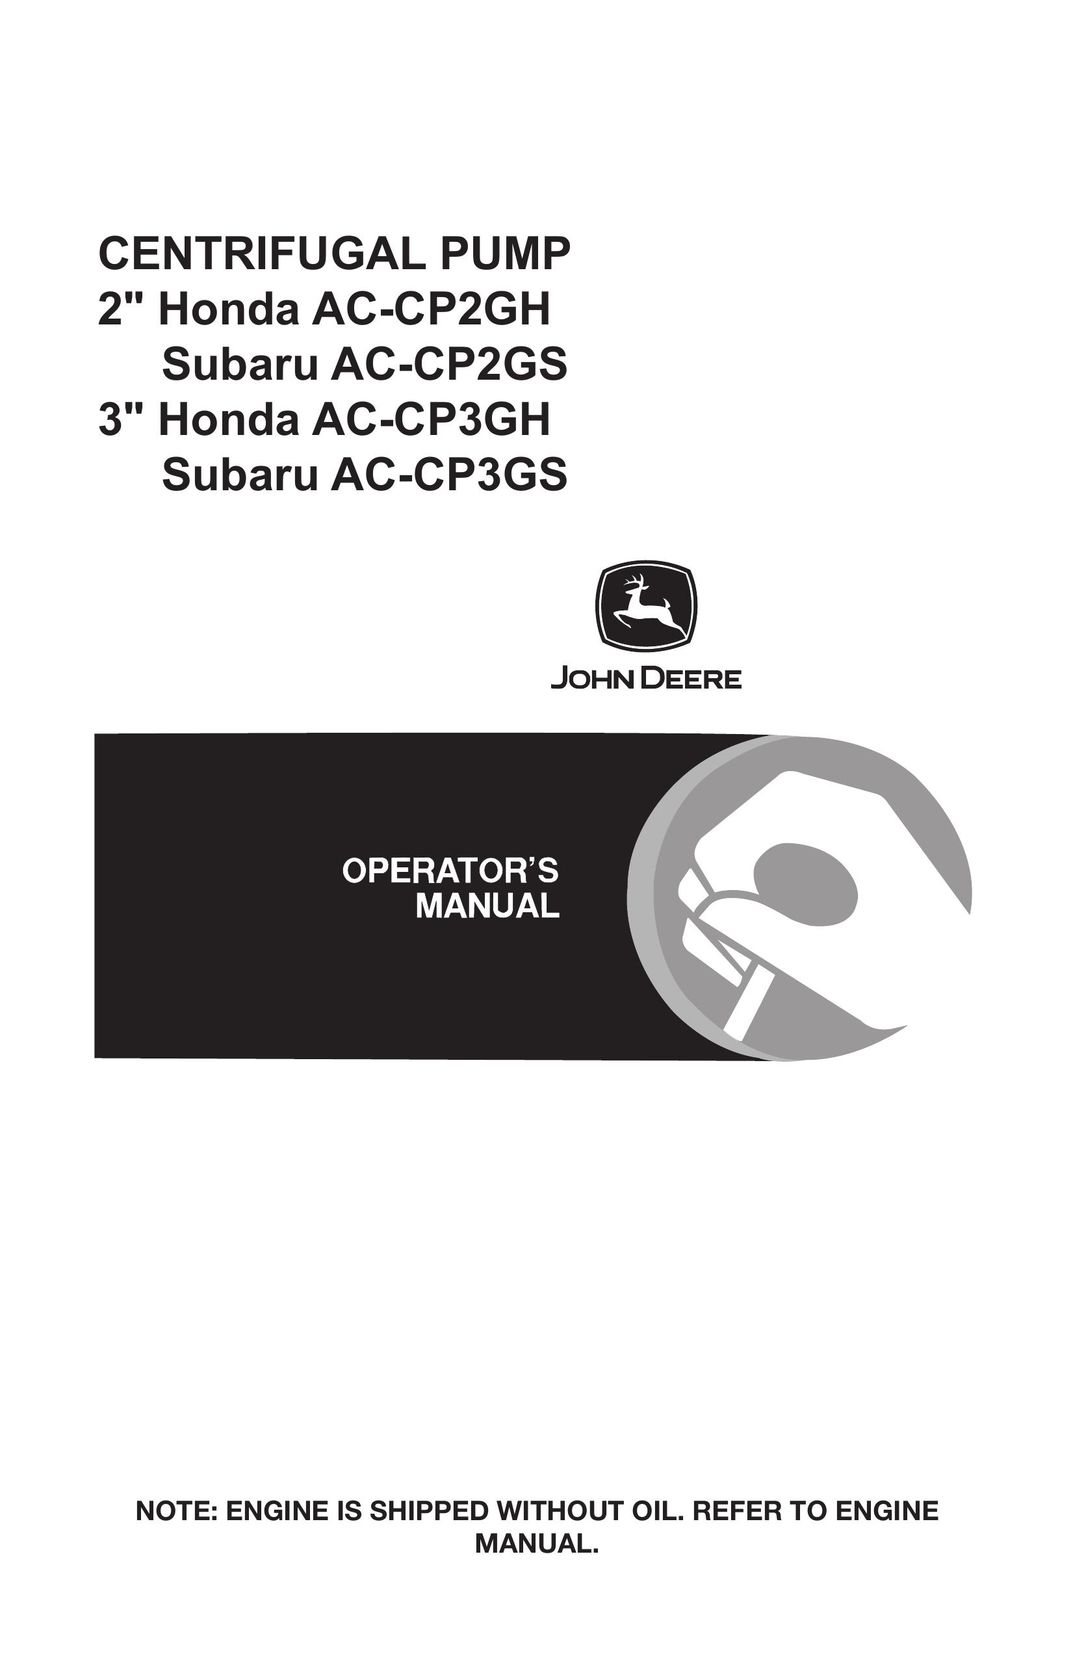 John Deere AC-CP2GH Water Pump User Manual